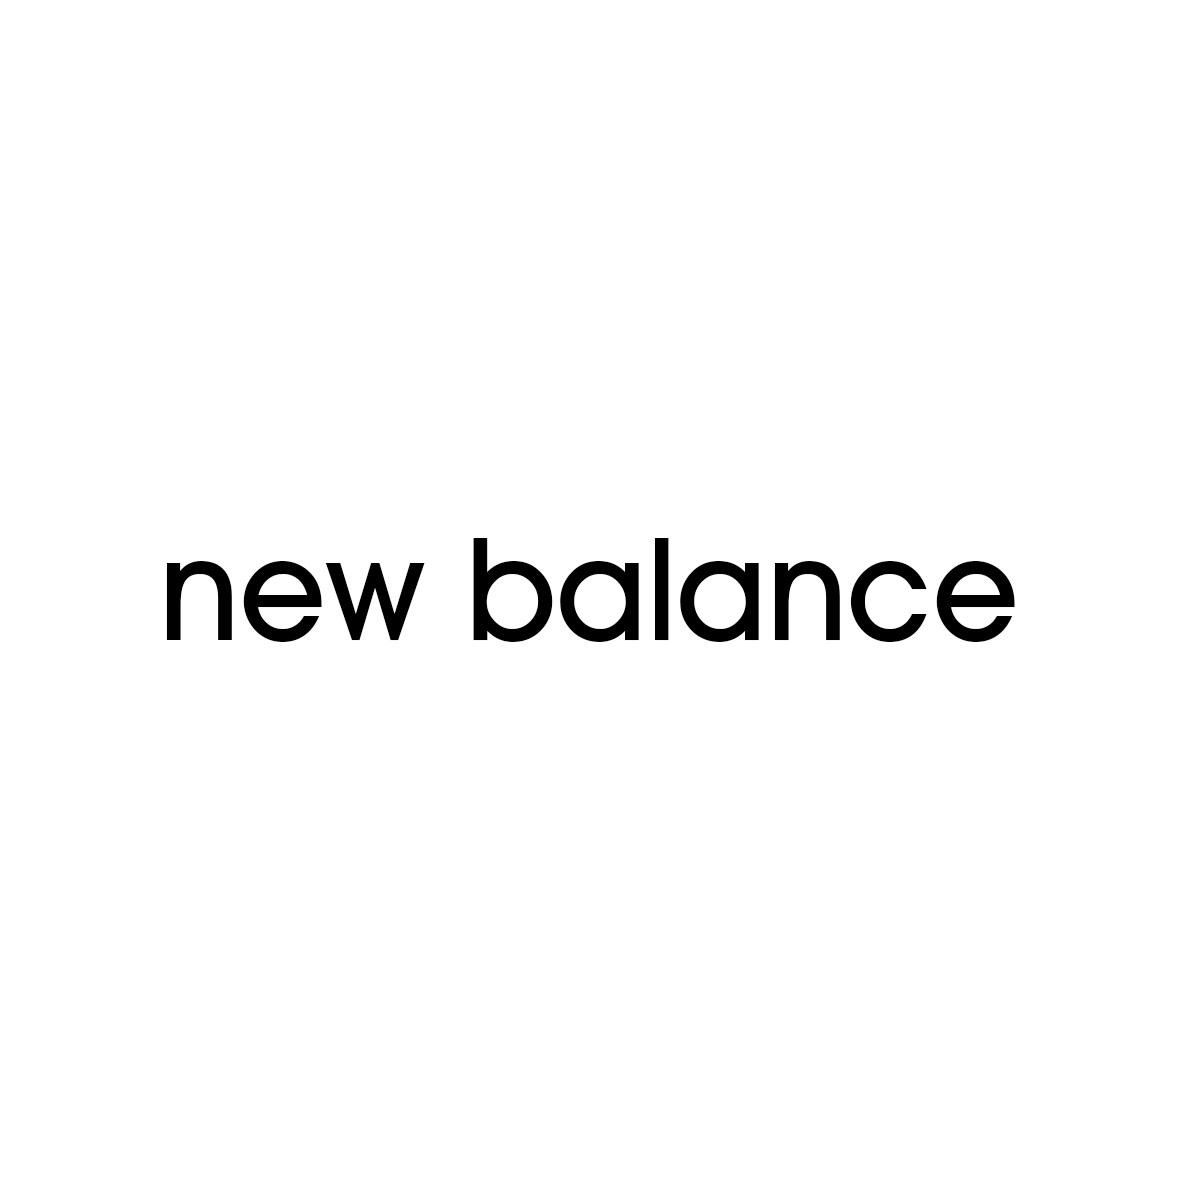 NEW BALANCE旱冰鞋商标转让费用买卖交易流程